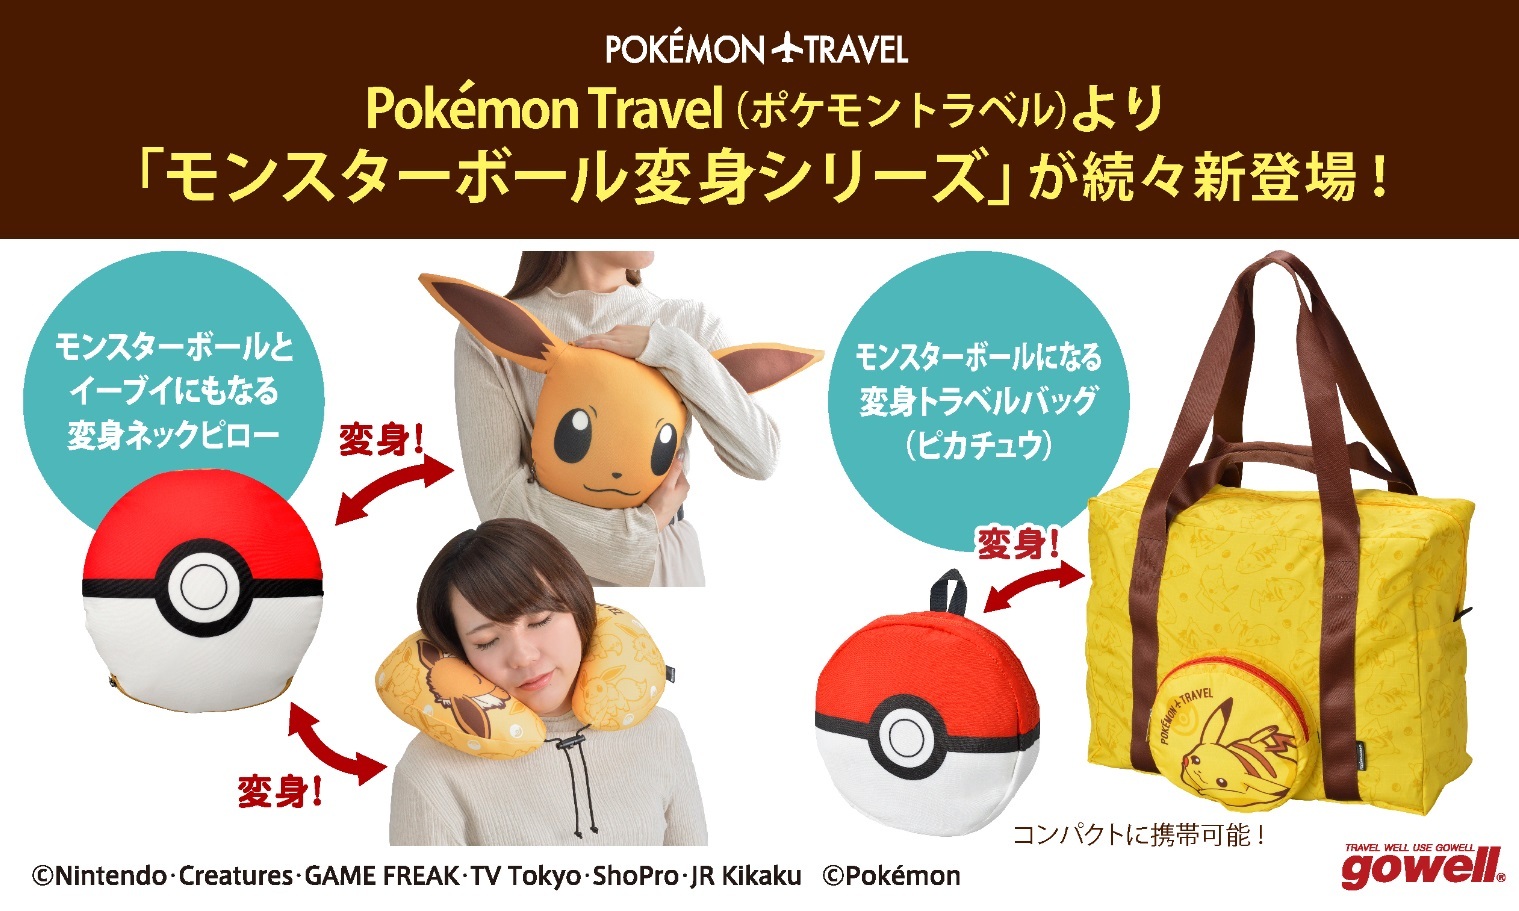 ポケットモンスターのトラベル雑貨 Pokemon Travel より 旅が楽しくなるモンスターボール変身シリーズ の新商品が10月下旬より順次販売開始 株式会社トレードワークスのプレスリリース